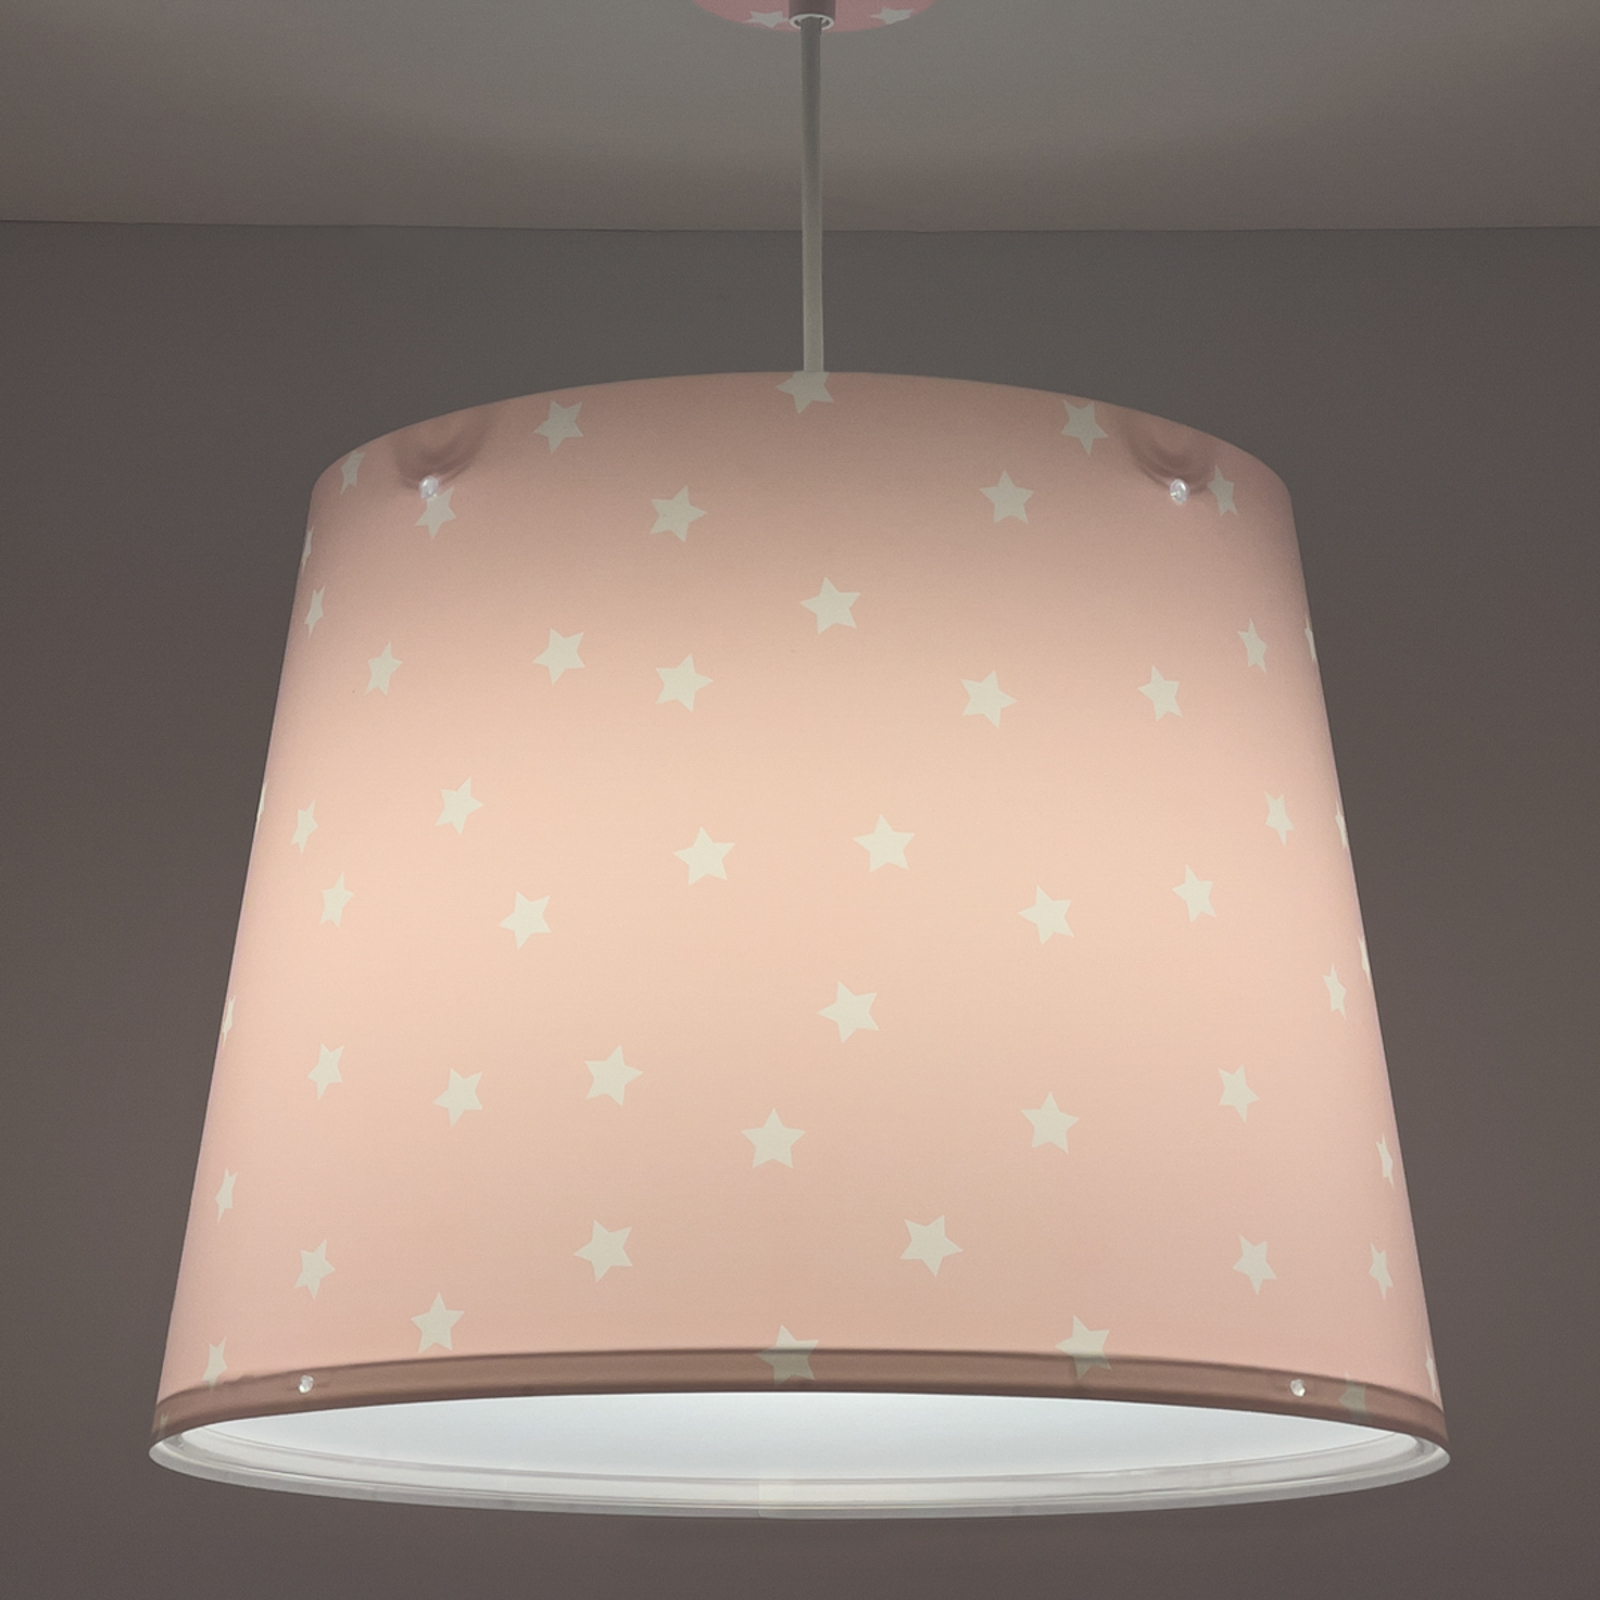 Dalber Star Light hanglamp voor kinderen roze